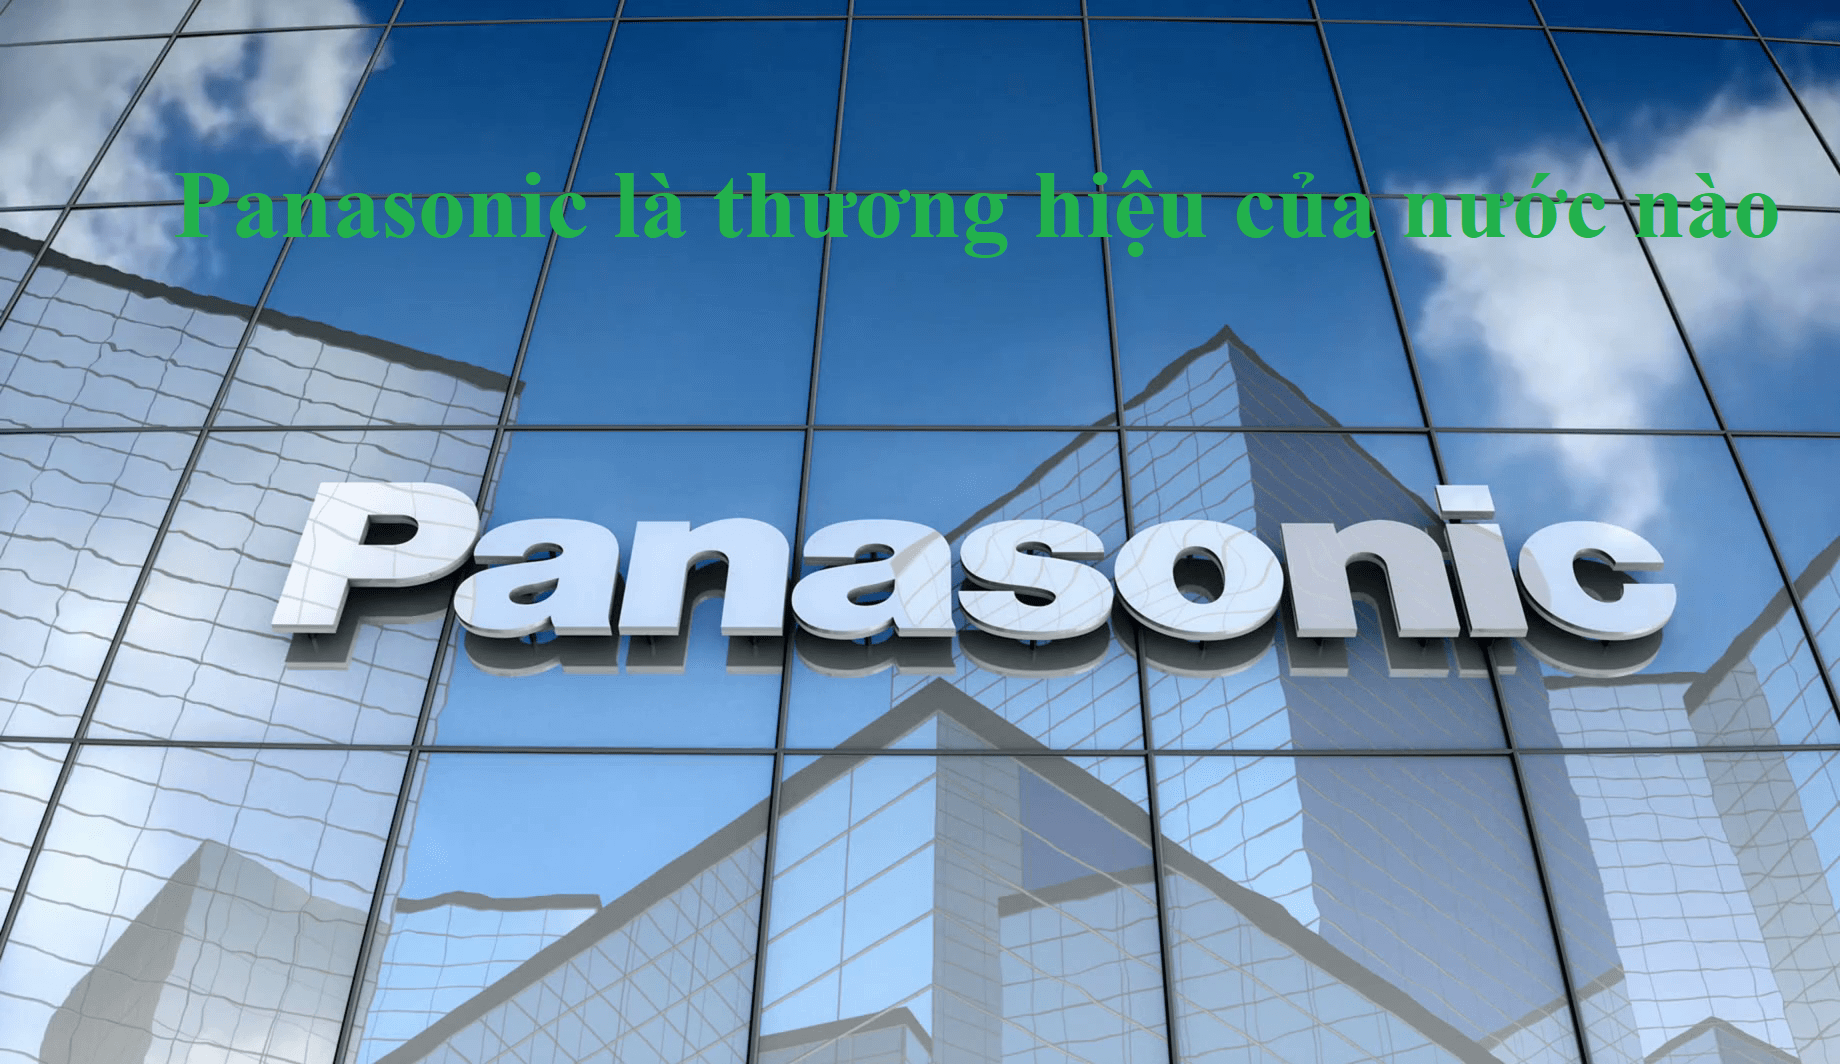 Panasonic là thương hiệu của nước nào